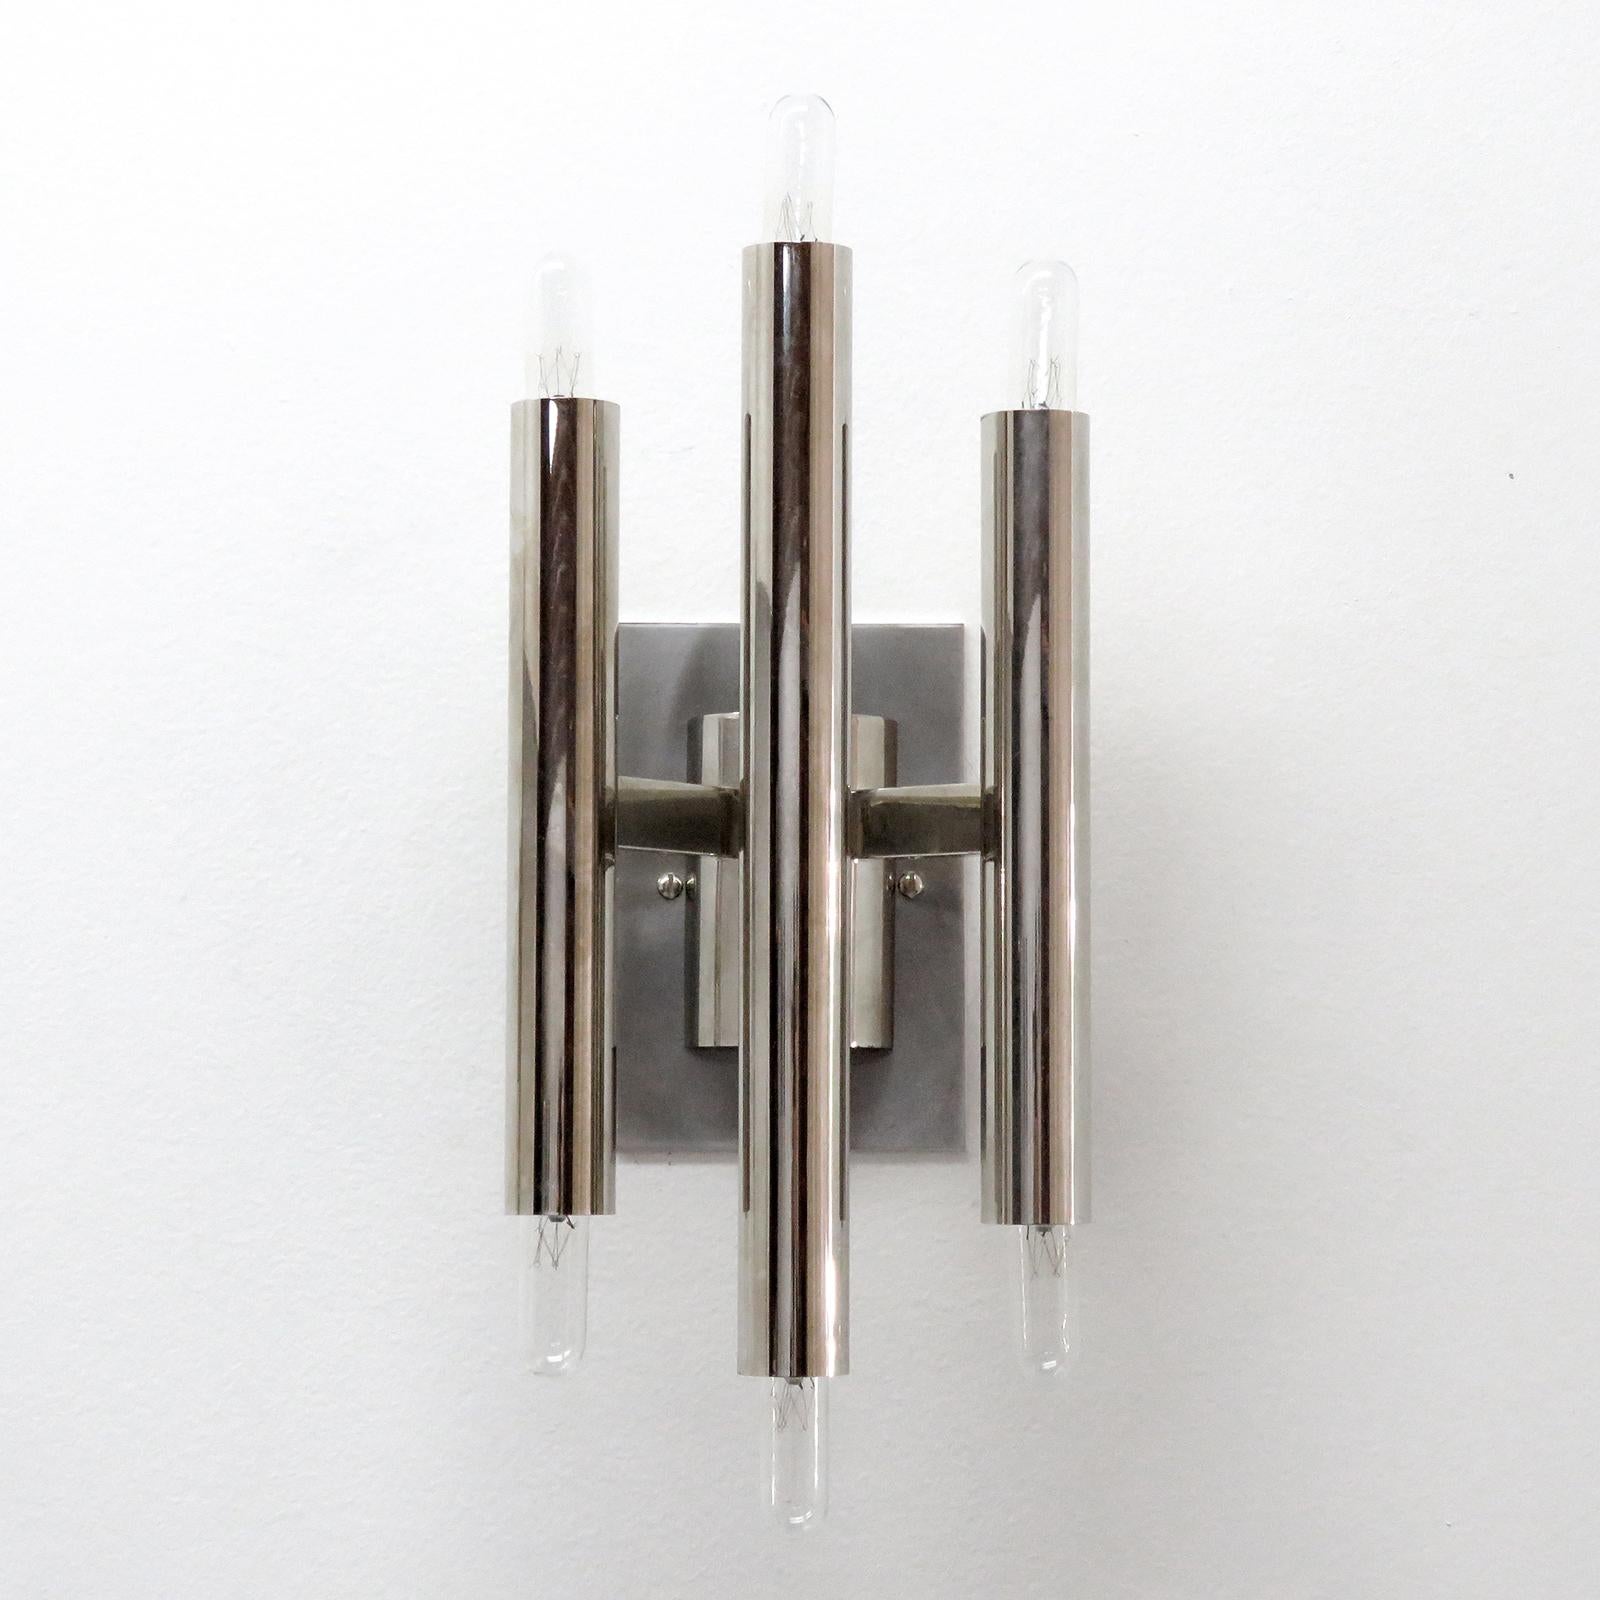 Tolles Paar geometrischer Wandleuchten von Gaetano Sciolari mit drei vernickelten Doppelkerzen. Sechs E12-Fassungen pro Leuchte, max. Wattleistung je 40 W oder LED-Äquivalent, verdrahtet nach US-Standard, Glühbirnen werden als einmalige Gefälligkeit